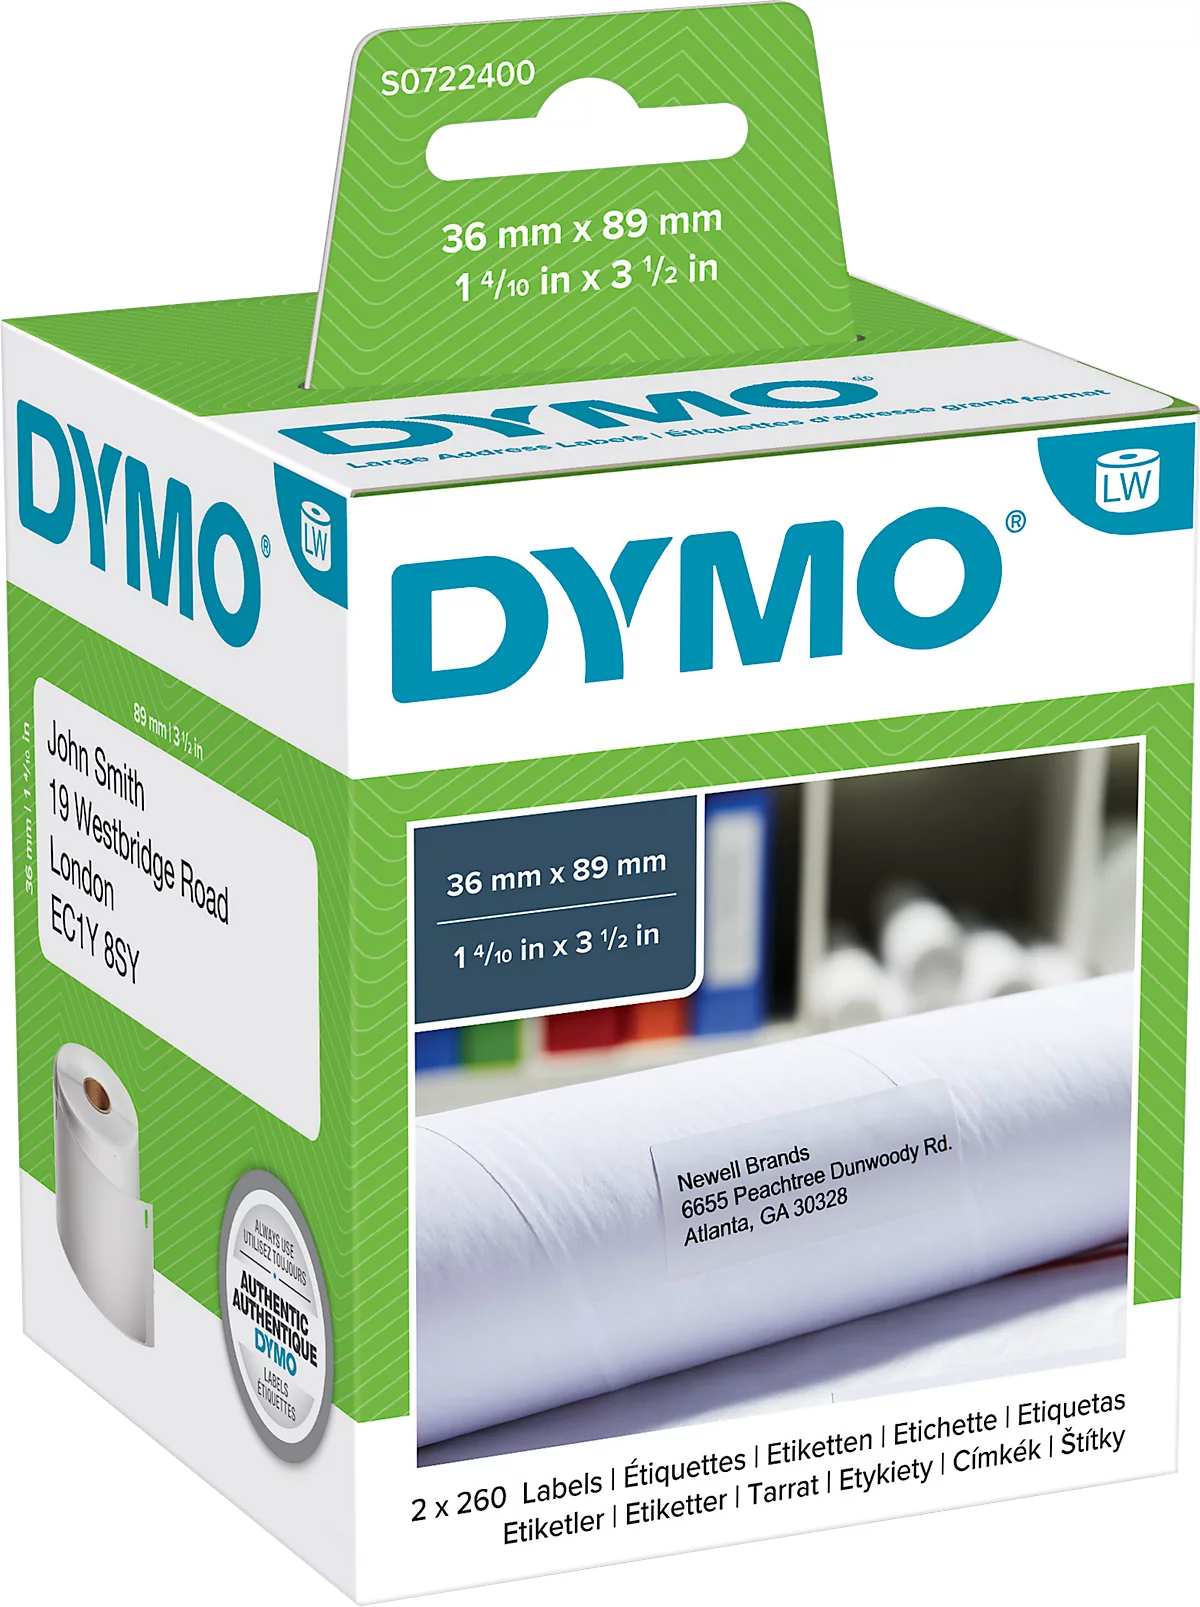 DYMO LabelWriter, Adress-Etiketten, permanent, Papier, 89 x 36 mm, 2 x 260 Stück, weiss